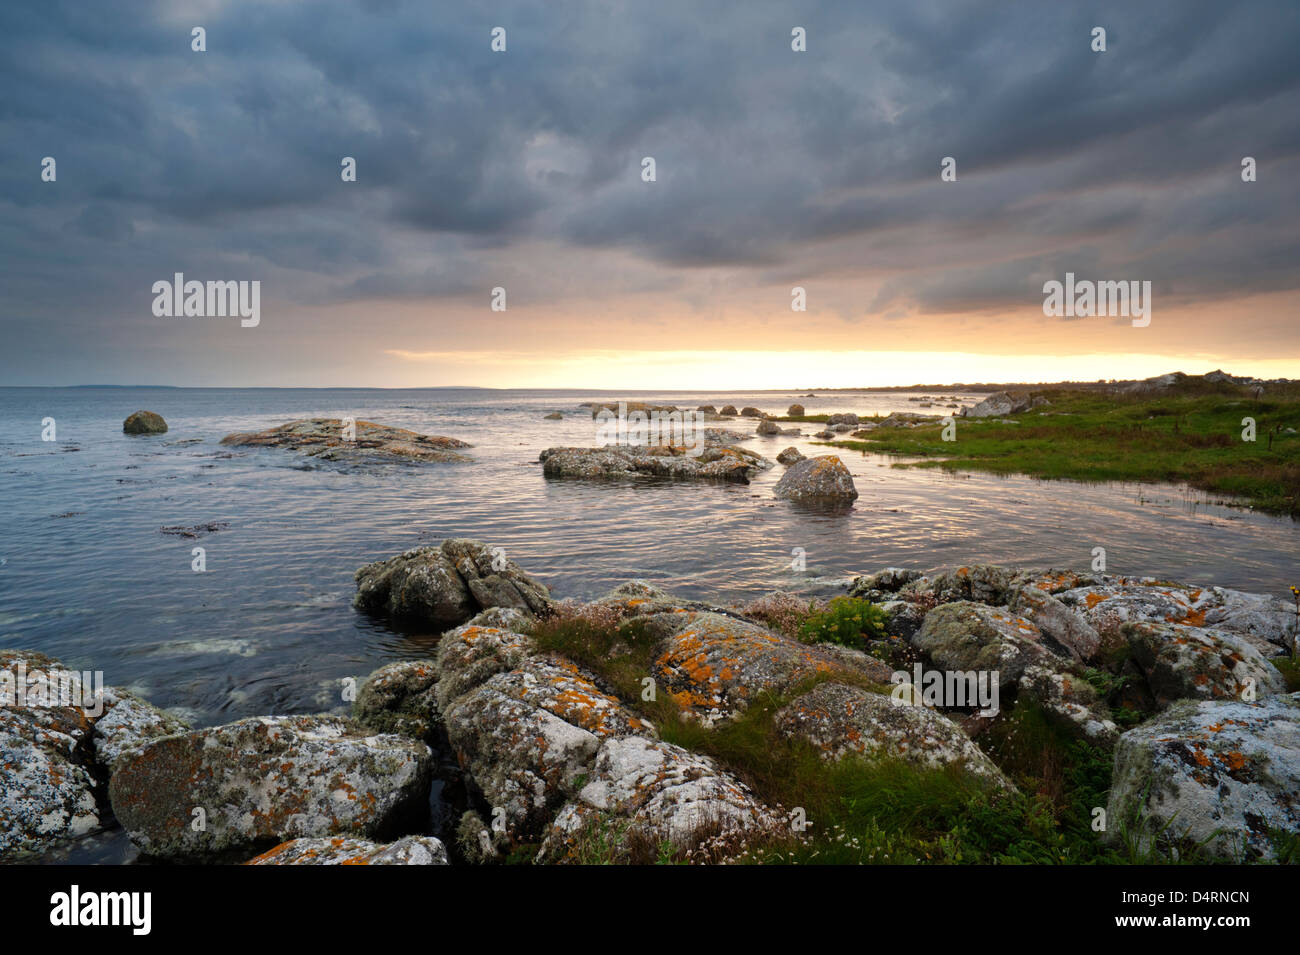 Vue sur la baie de Galway vers les îles d'Aran et de l'Atlantique près de coucher du soleil, de la plage près de Spiddal, Co Galway, Irlande Banque D'Images